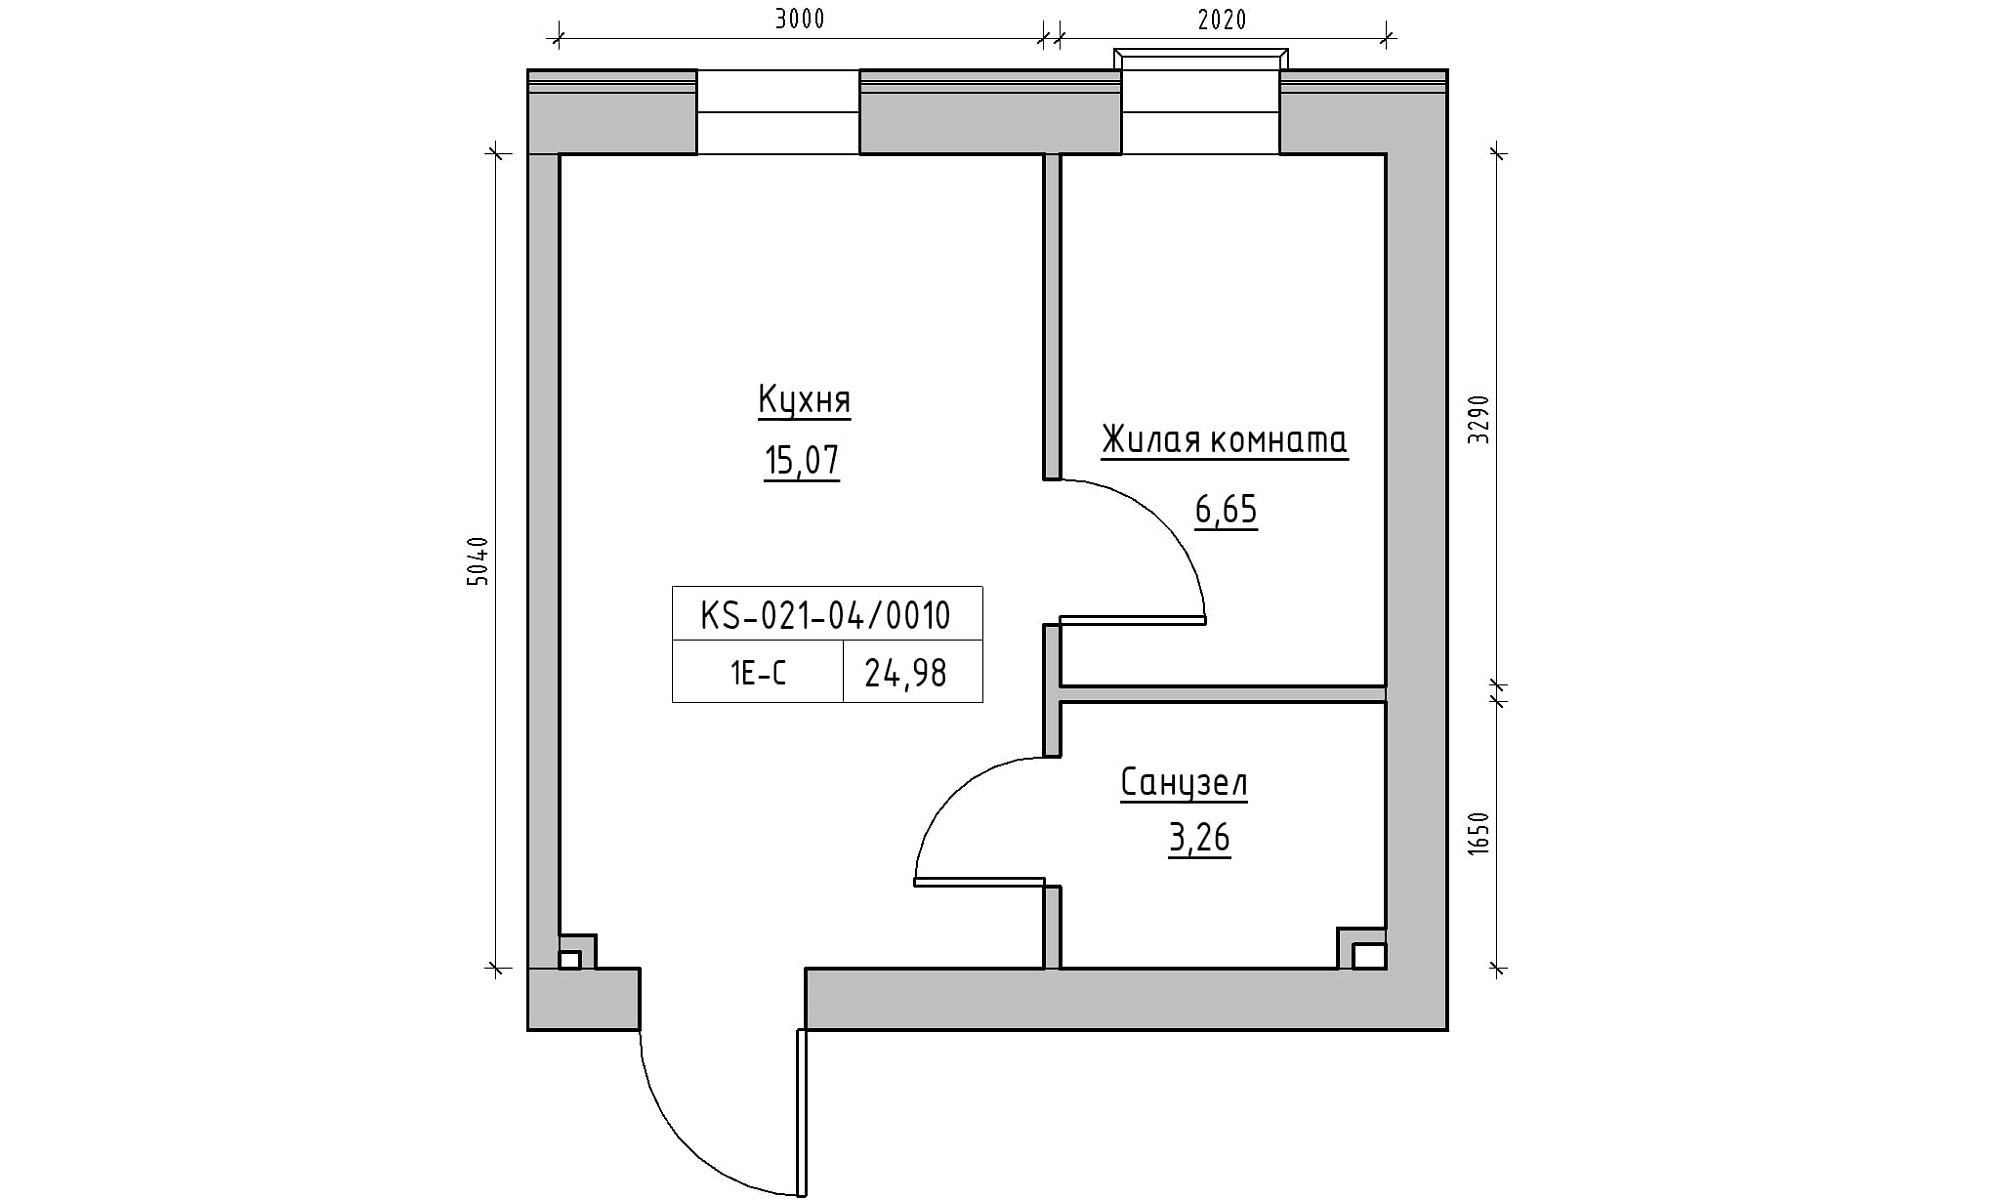 Планировка 1-к квартира площей 24.98м2, KS-021-04/0010.